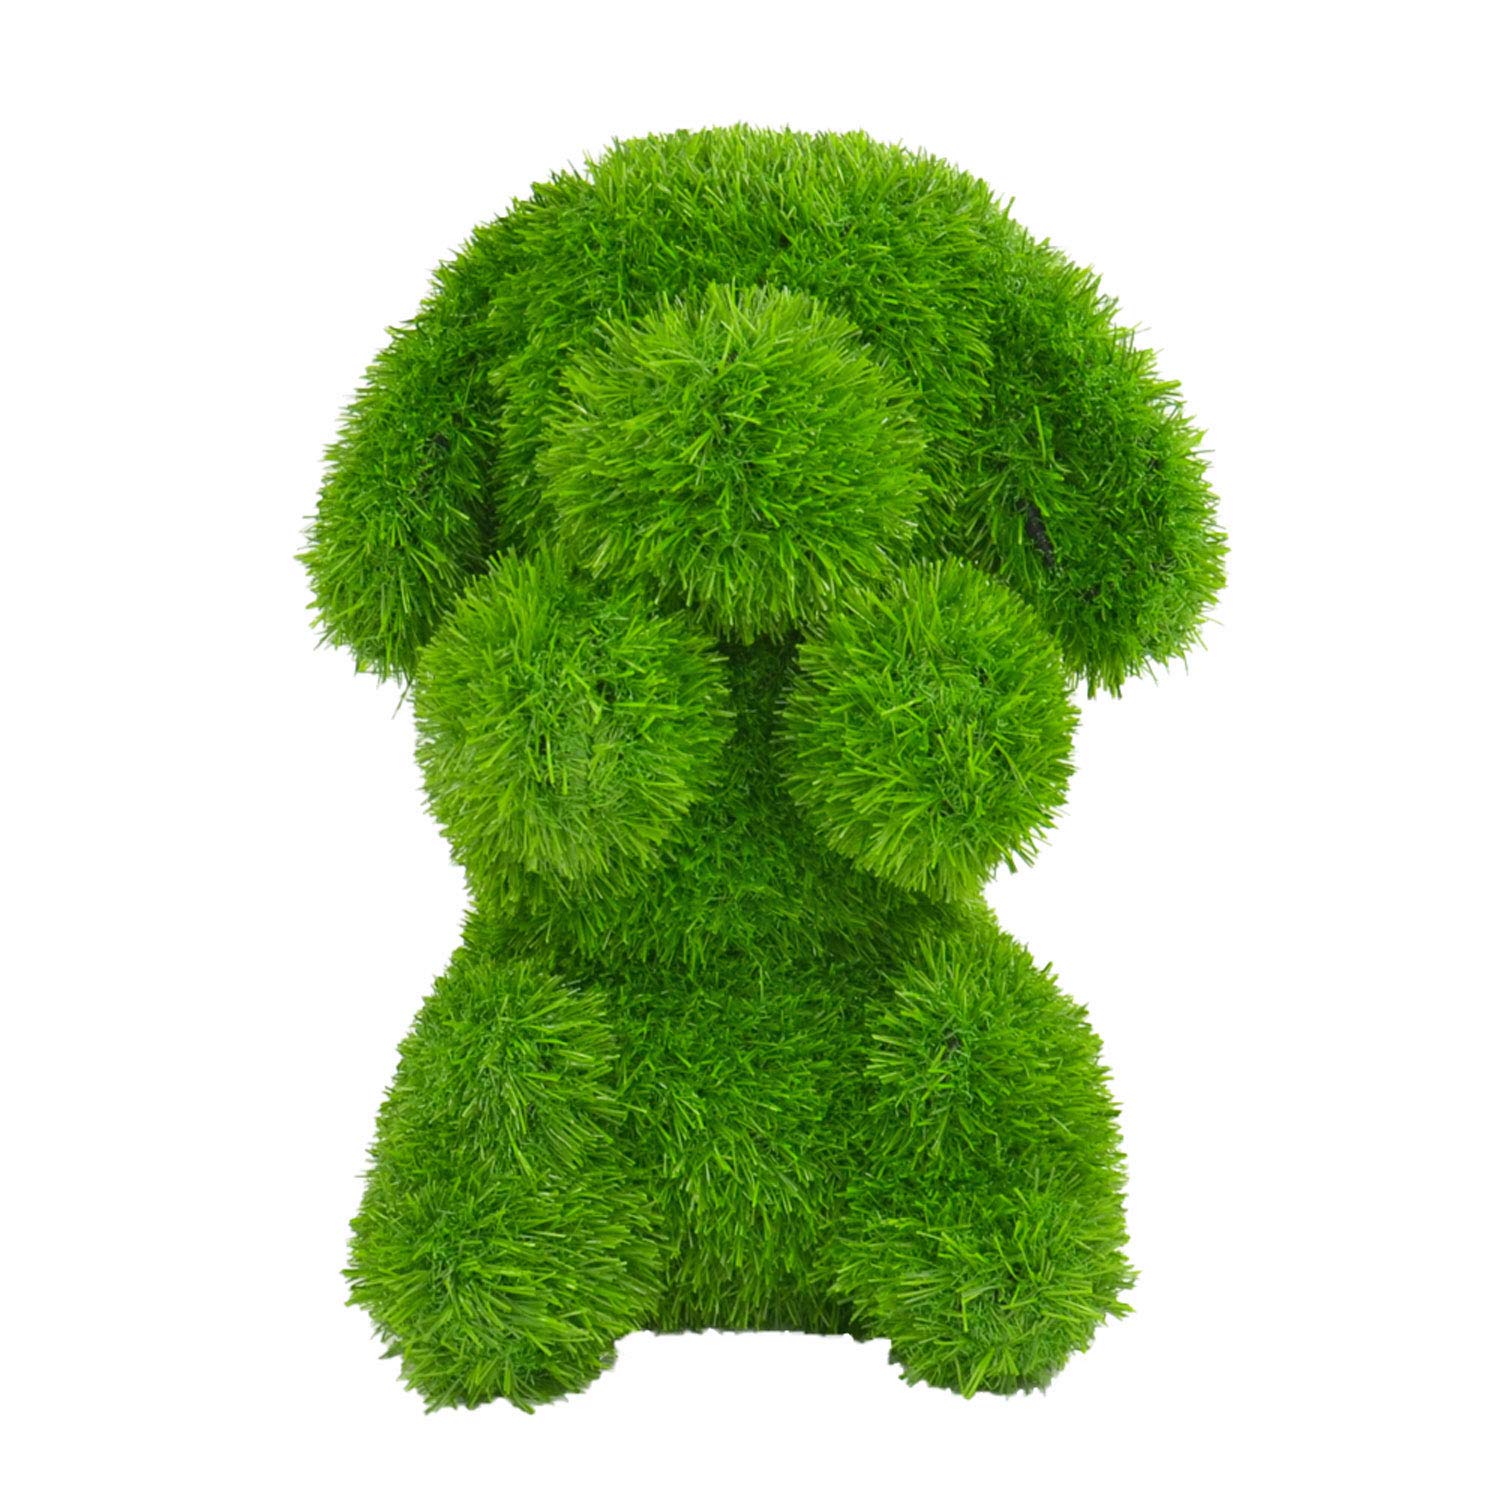 Kögler 53262 - AniPlants Hund sitzend, Deko-Figur aus Kunstrasen, ca. 30 x 34 x 36 cm groß, wetterfest und formstabil, mit Ankern zur Befestigung, ideal als Deko für Garten und Haus